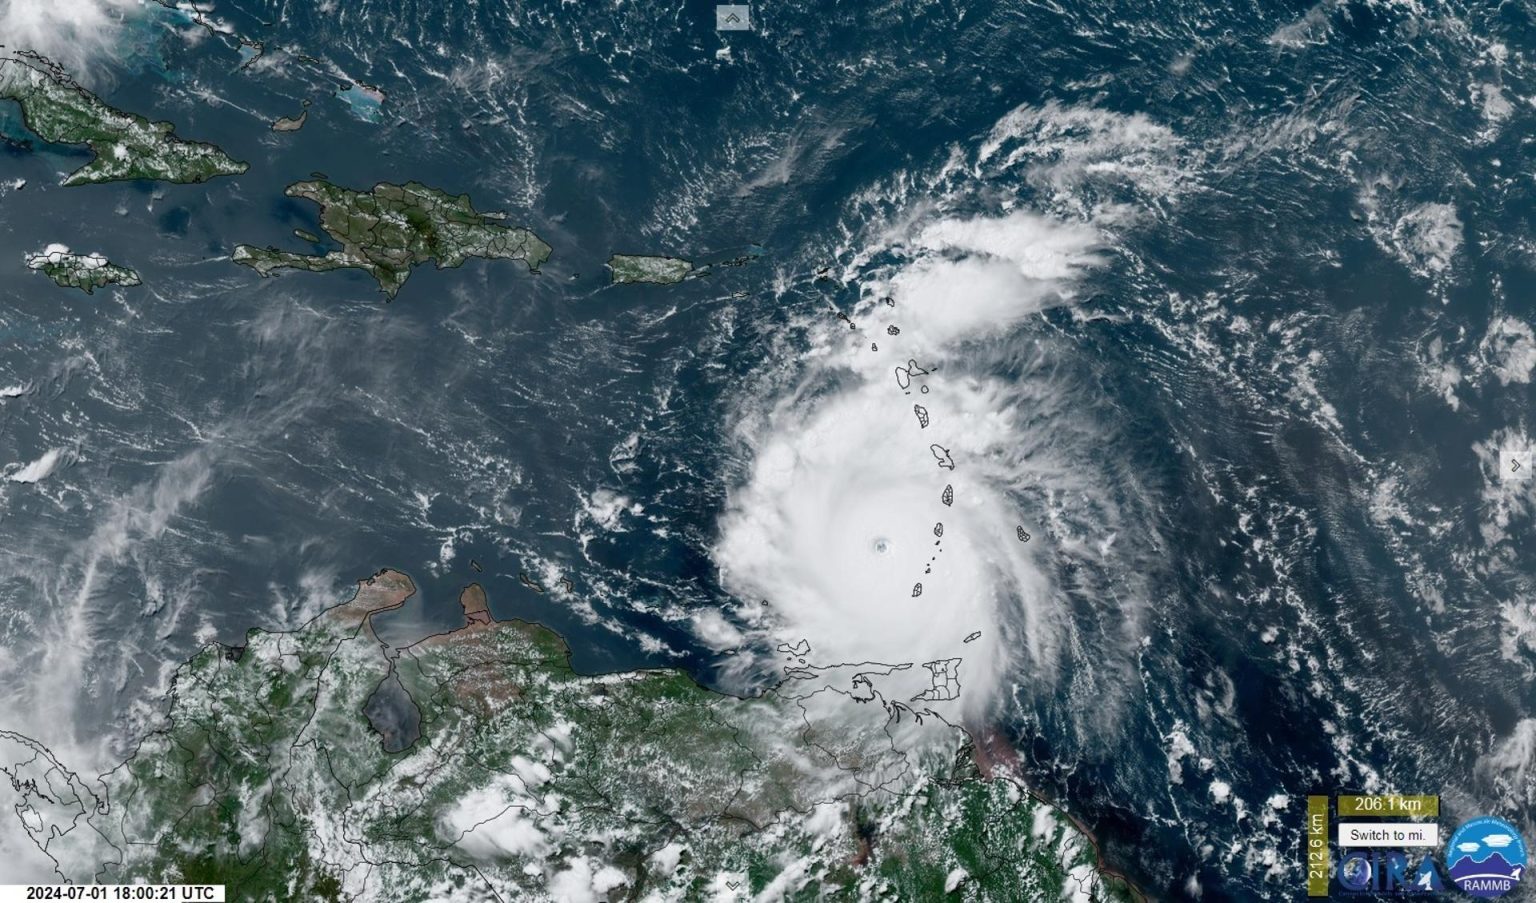 Captura de una imagen satelital de la Subdivisión de Meteorología Regional y de Mesoescala (RAMMB) y del Instituto Cooperativo para la Investigación Atmosférica (CIRA) de la Universidad Estatal de Colorado (CSU) donde se muestra una vista del ojo del huracán Beryl durante su paso por el Caribe. EFE/ RAMMB/CIRA/CSU /SOLO USO EDITORIAL /NO VENTAS /SOLO DISPONIBLE PARA ILUSTRAR LA NOTICIA QUE ACOMPAÑA /CRÉDITO OBLIGATORIO